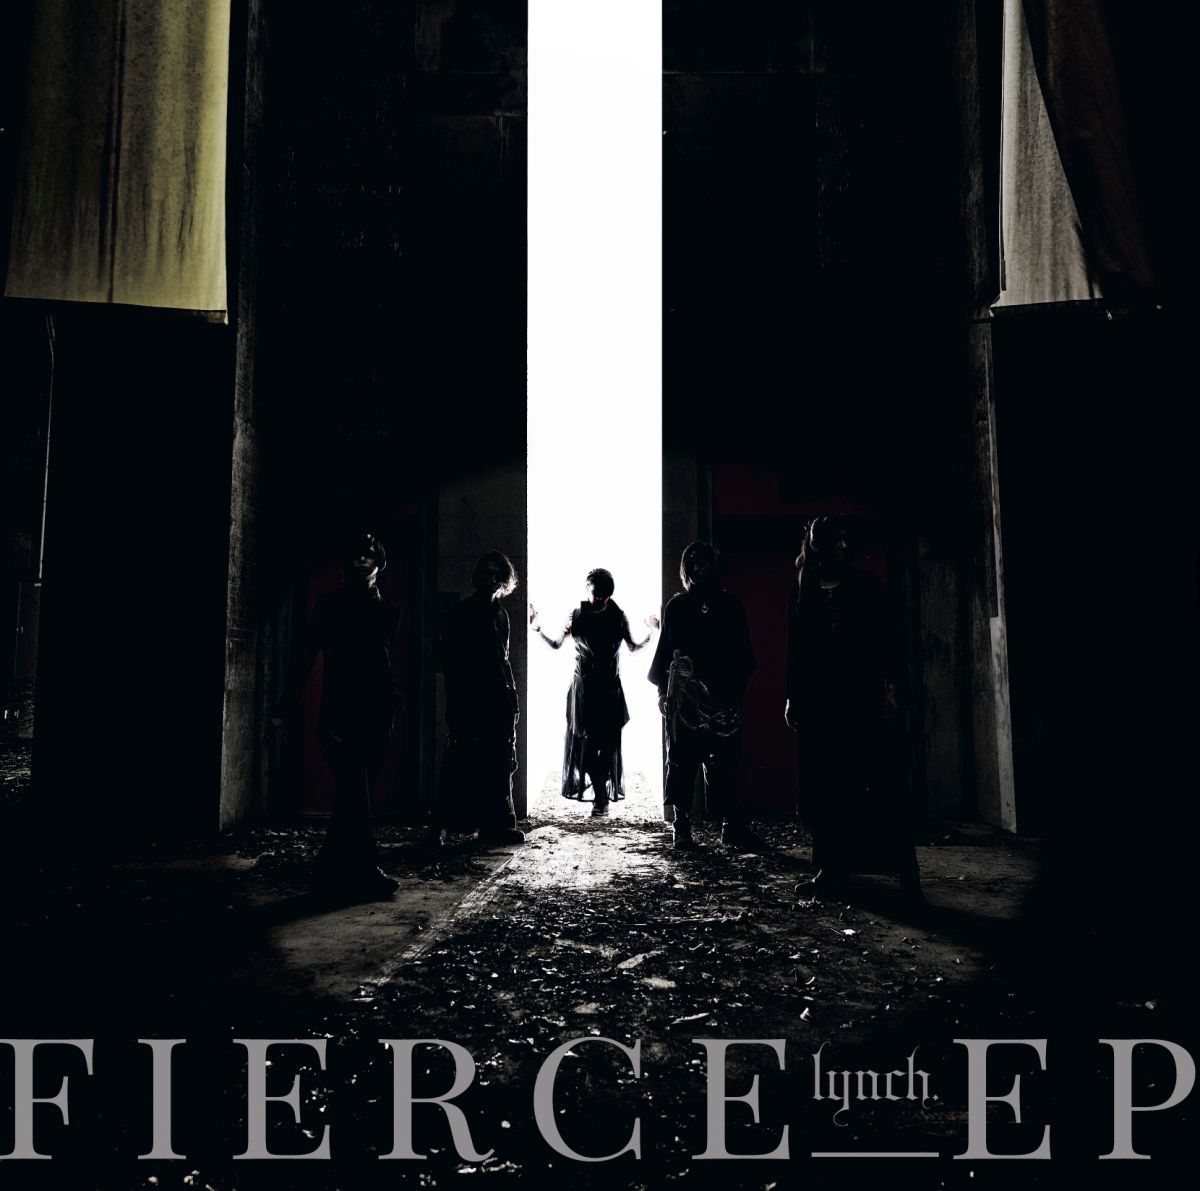 FIERCE-EP